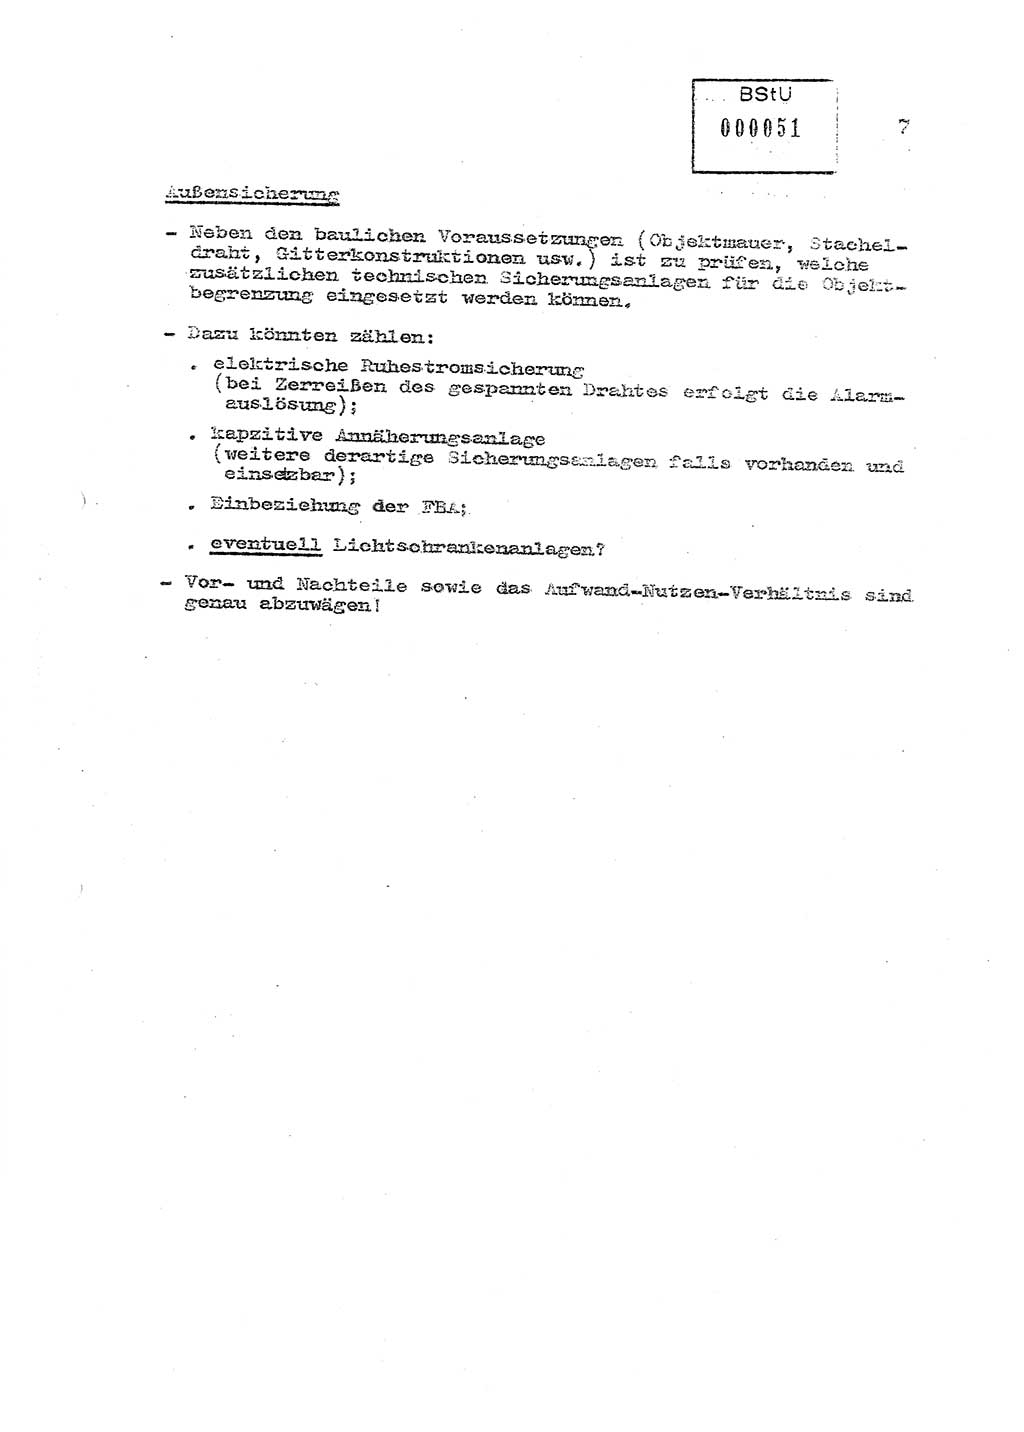 Sicherungs- und Nachrichtentechnik in UHA [Untersuchungshaftanstalten, Ministerium für Staatssicherheit, Deutsche Demokratische Republik (DDR)], Abteilung (Abt.) ⅩⅣ, Berlin 1980, Seite 7 (Si.-NT UHA MfS DDR Abt. ⅩⅣ /80 1980, S. 7)